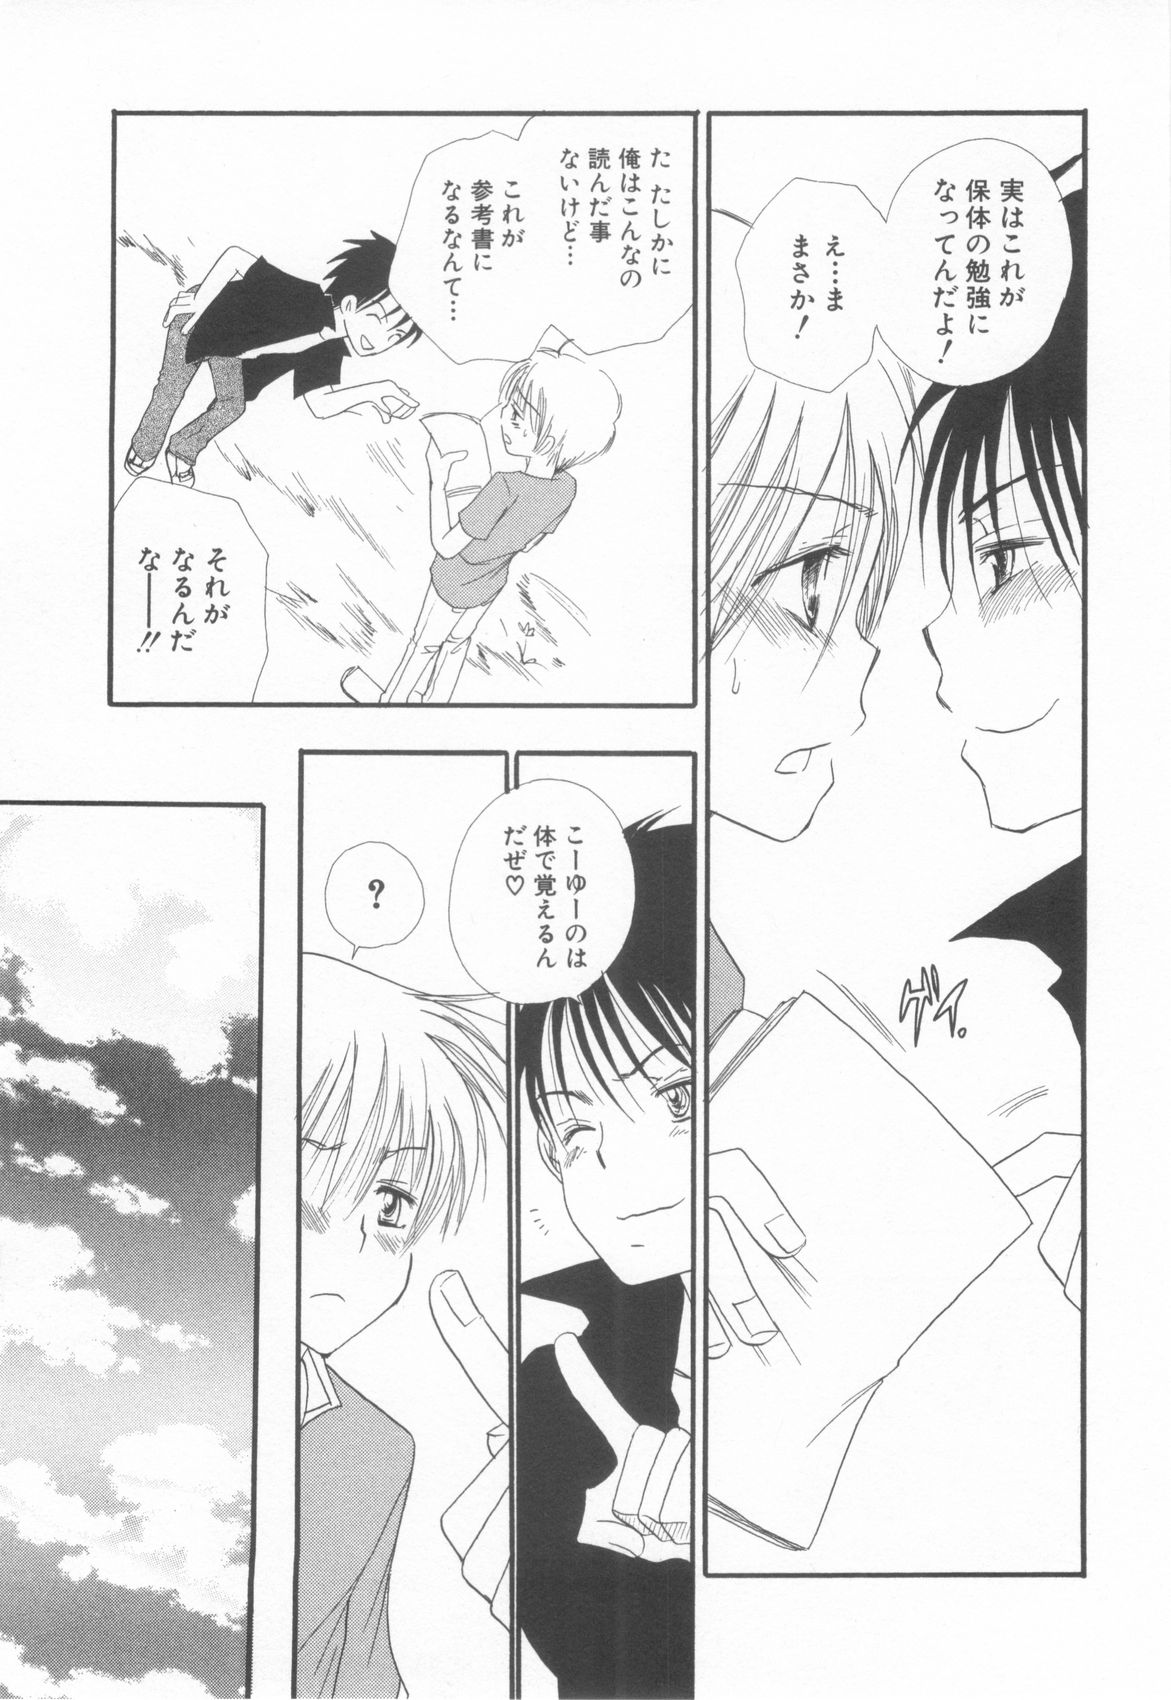 [Anthology] Shota Tama Vol. 2 page 37 full